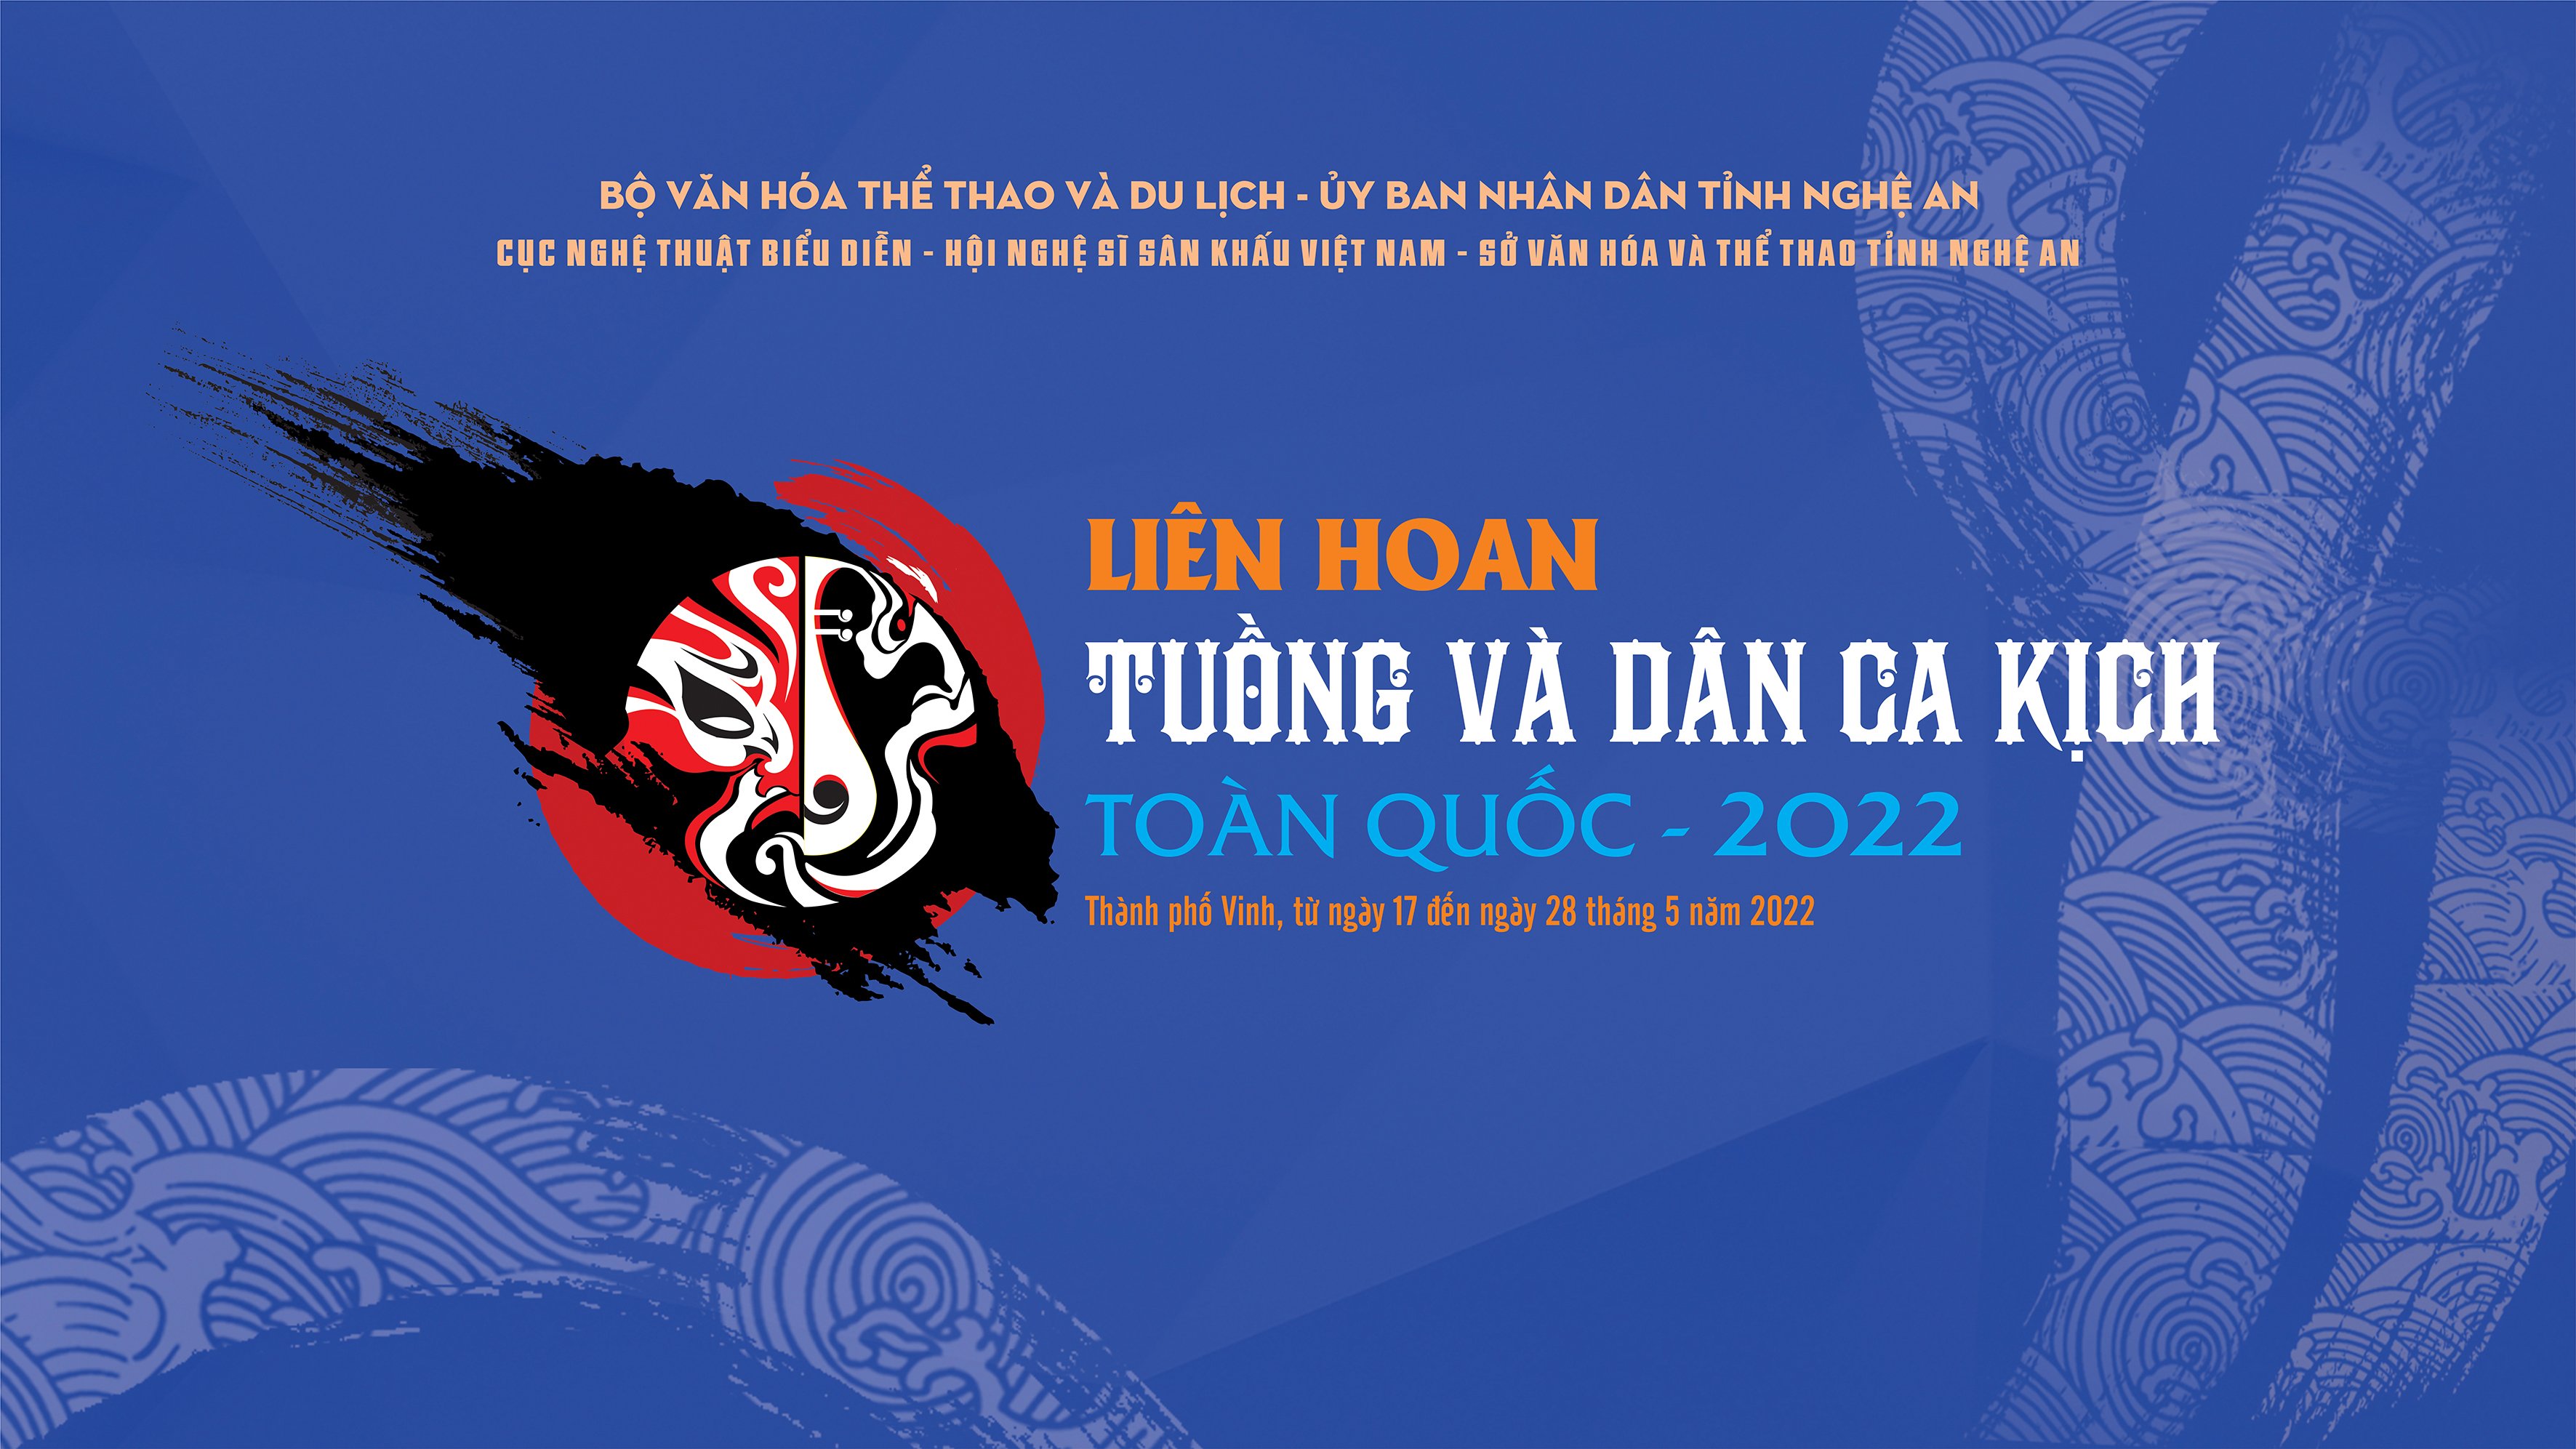 LIÊN HOAN TUỒNG VÀ DÂN CA KỊCH TOÀN QUỐC 2022 - SƯƠNG PHỦ HOÀNG CUNG - Nhà hát nghệ thuật truyền thống Khánh Hòa